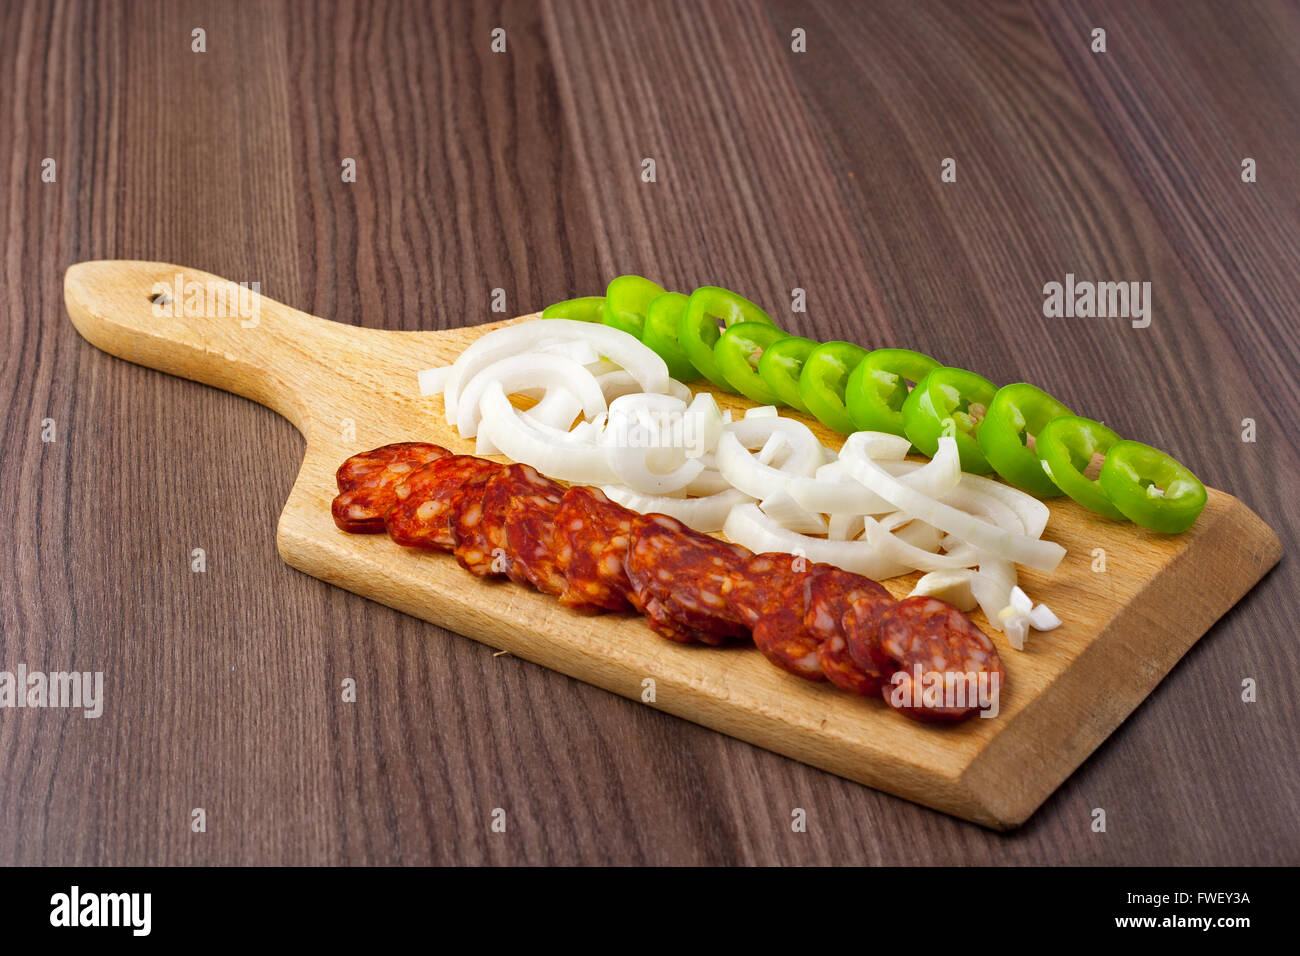 Ungherese piccante, affumicato, salsiccia. Servite su un piatto di legno con un po' di cipolla fresca e pepe verde Foto Stock